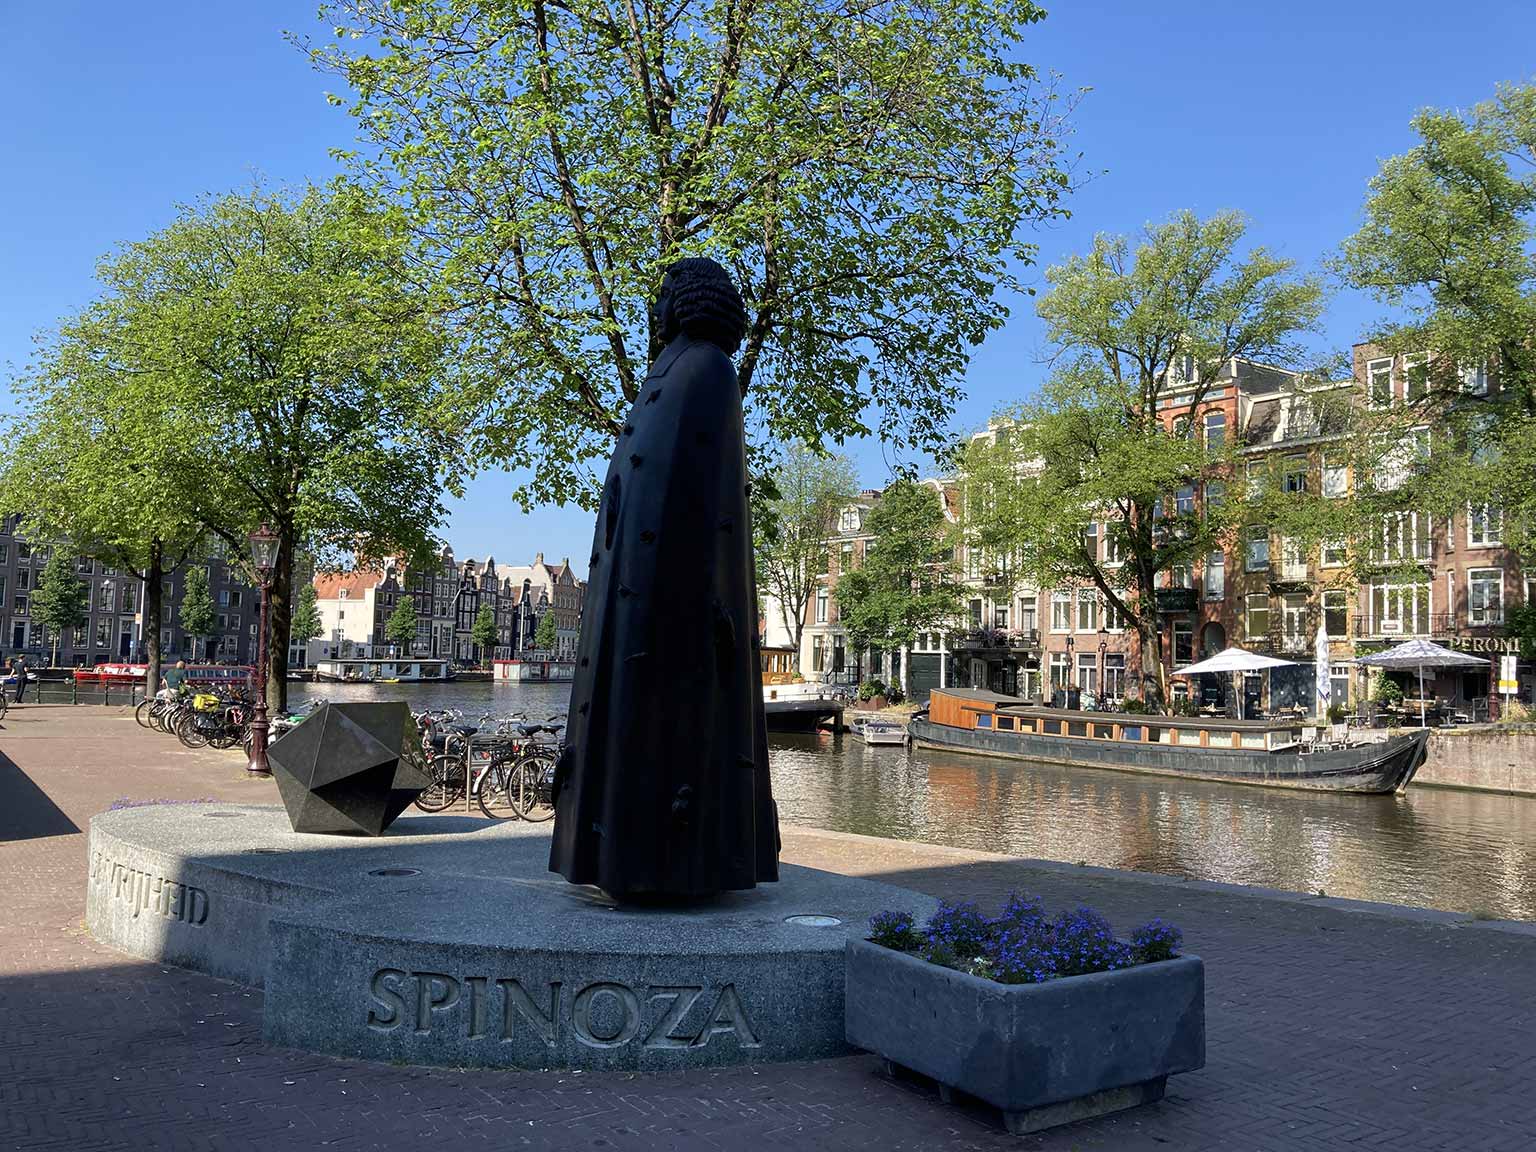 Statue of Spinoza at Zwanenburgwal, Amsterdam, with icosahedron